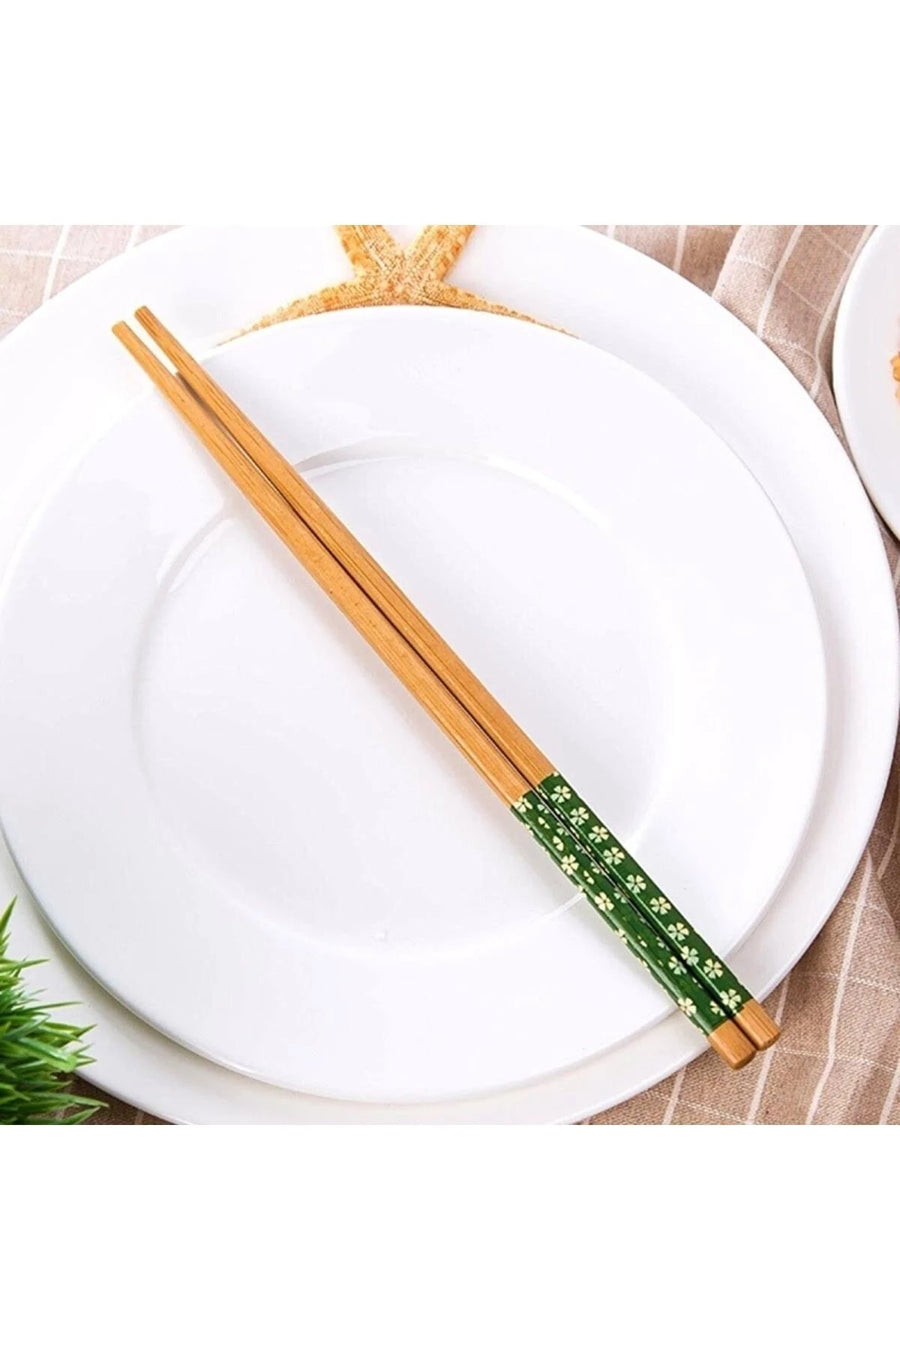 Yeşil chopstick